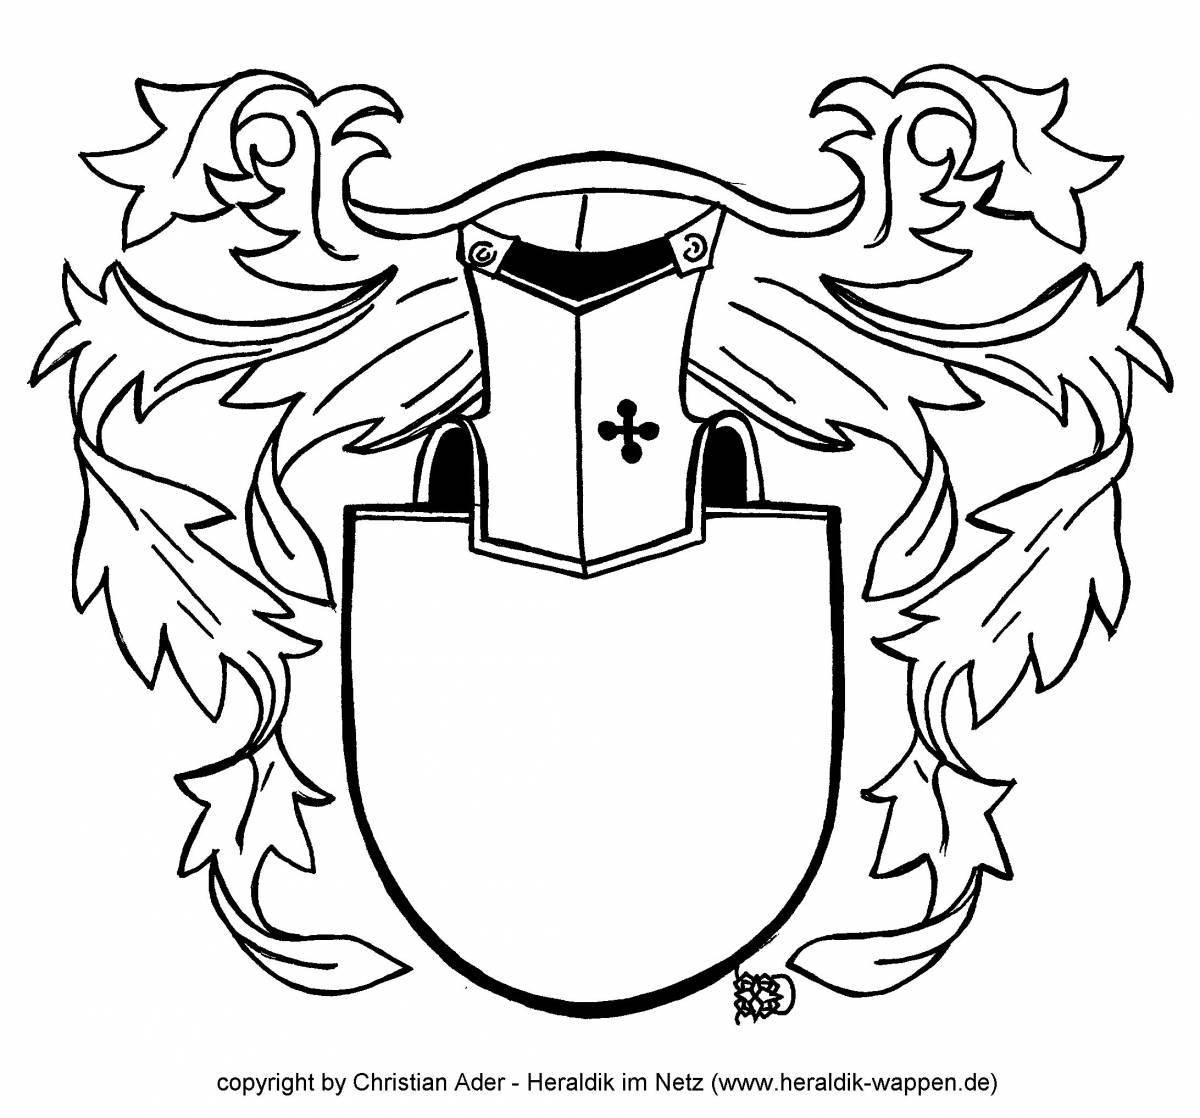 Дворцовая раскраска рыцарский герб